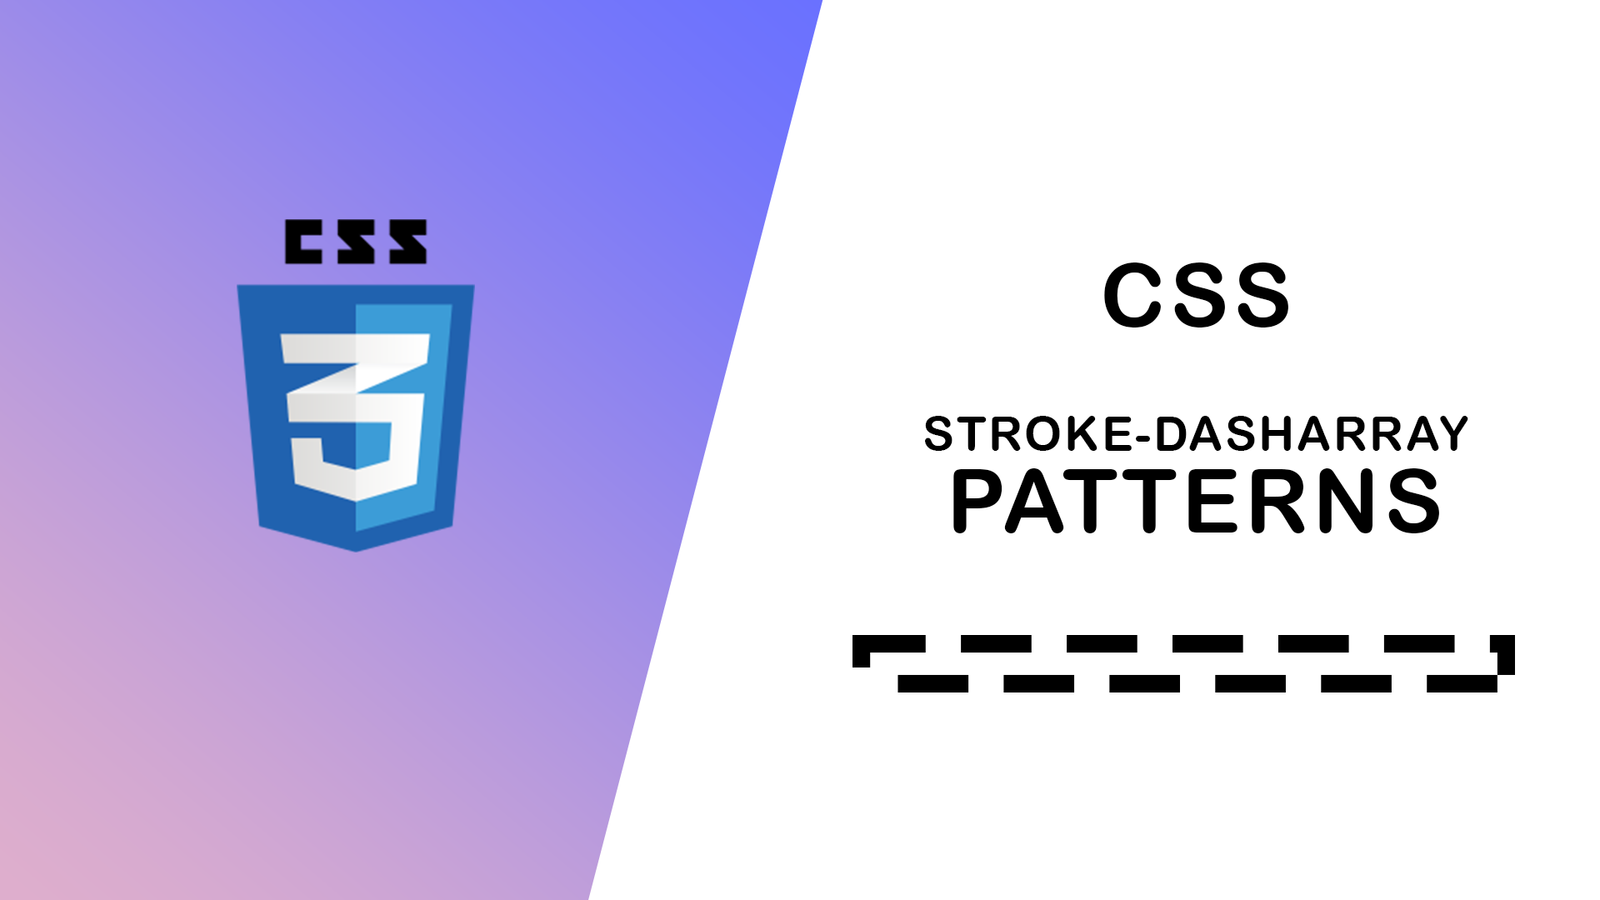 CSS Stroke Dasharray Patterns Work